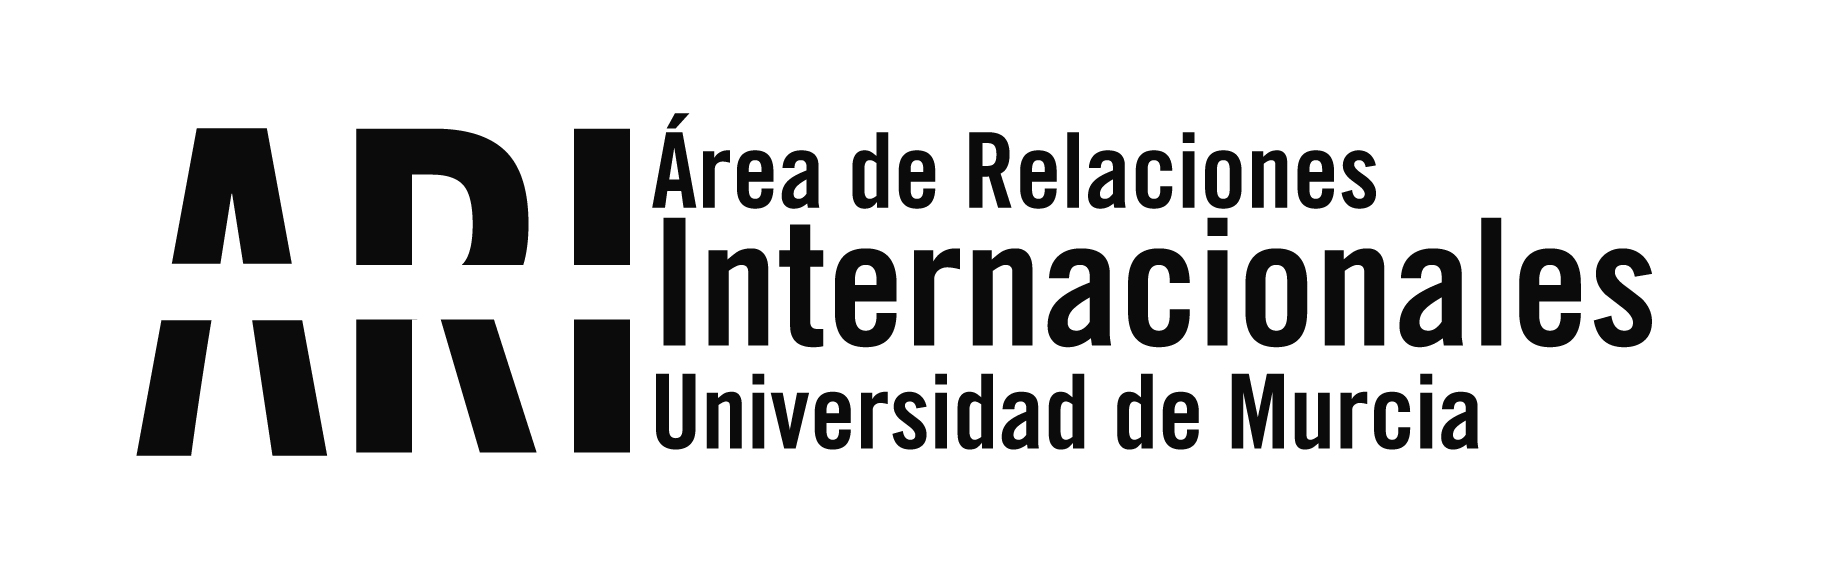 La Universidad de Murcia es líder obteniendo Becas Fulbright en España - Área de Relaciones Internacionales